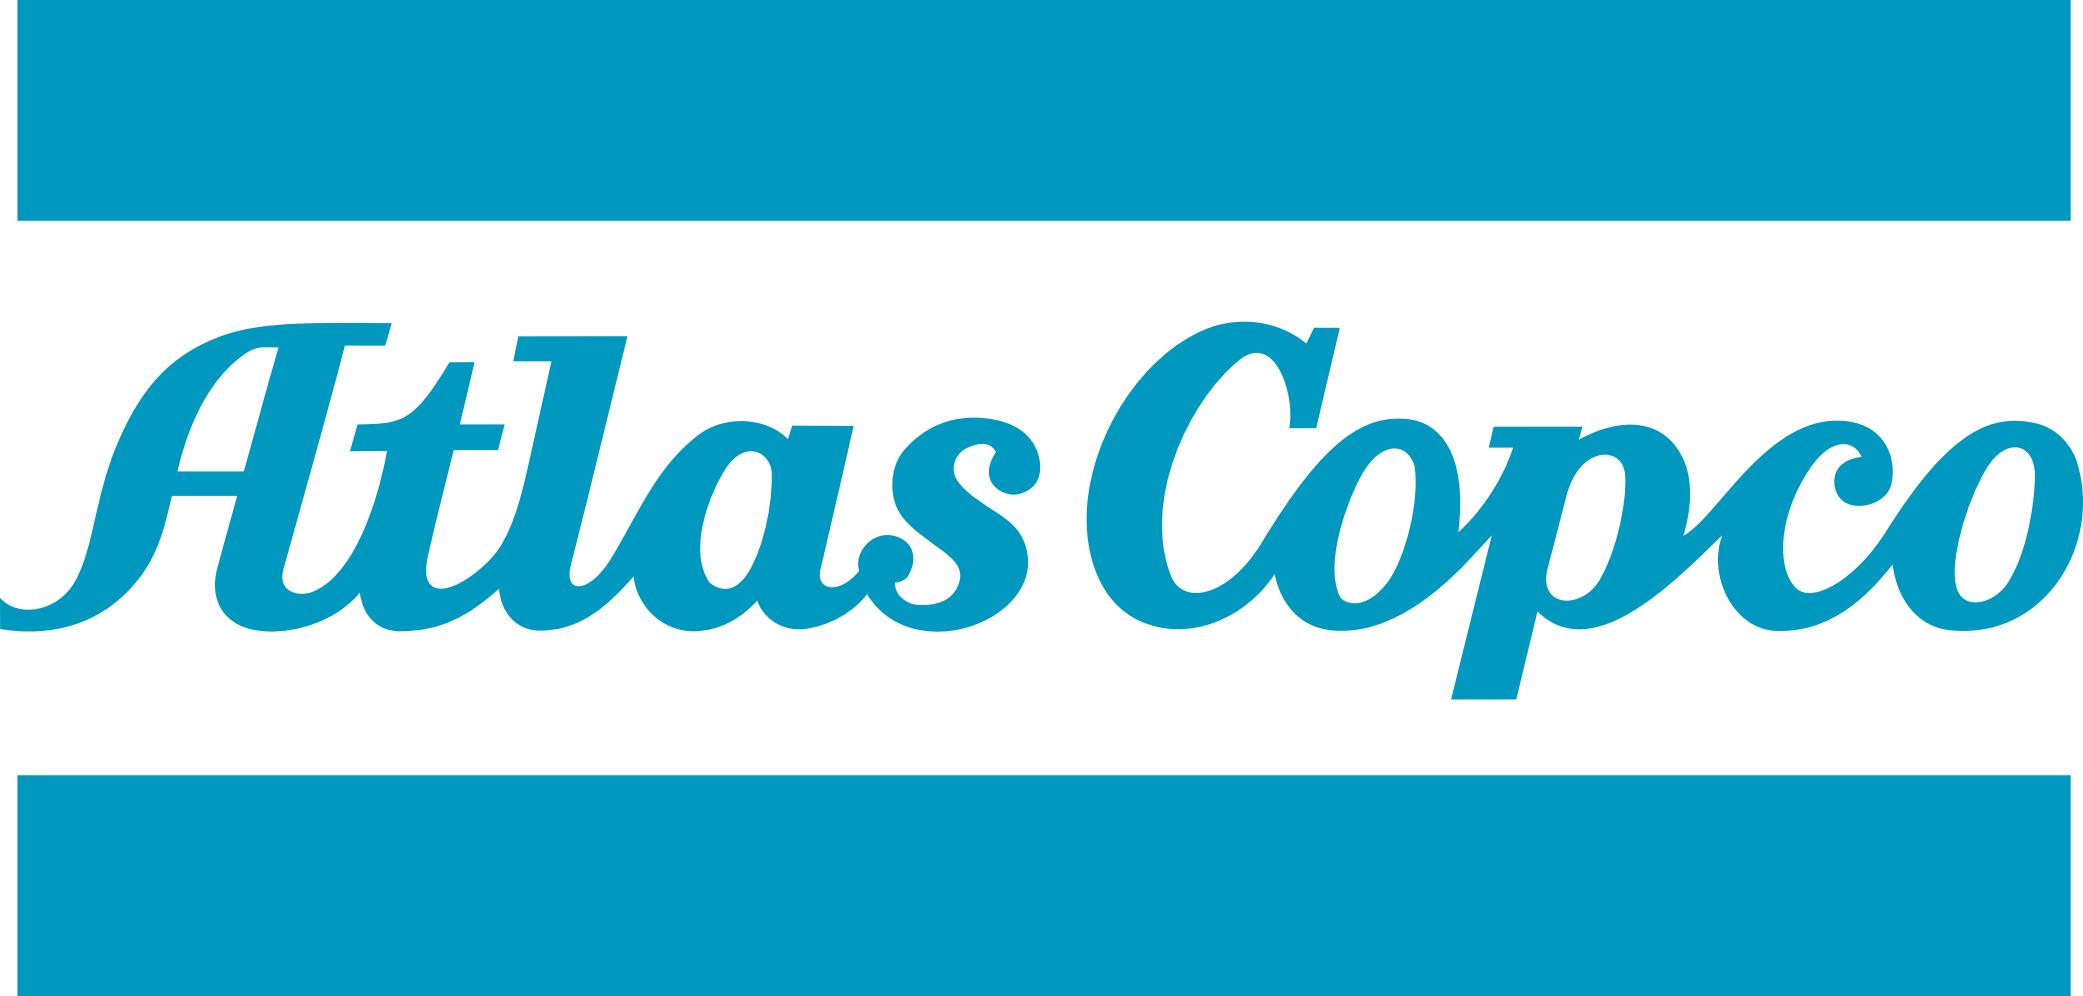 ATLAS Logo